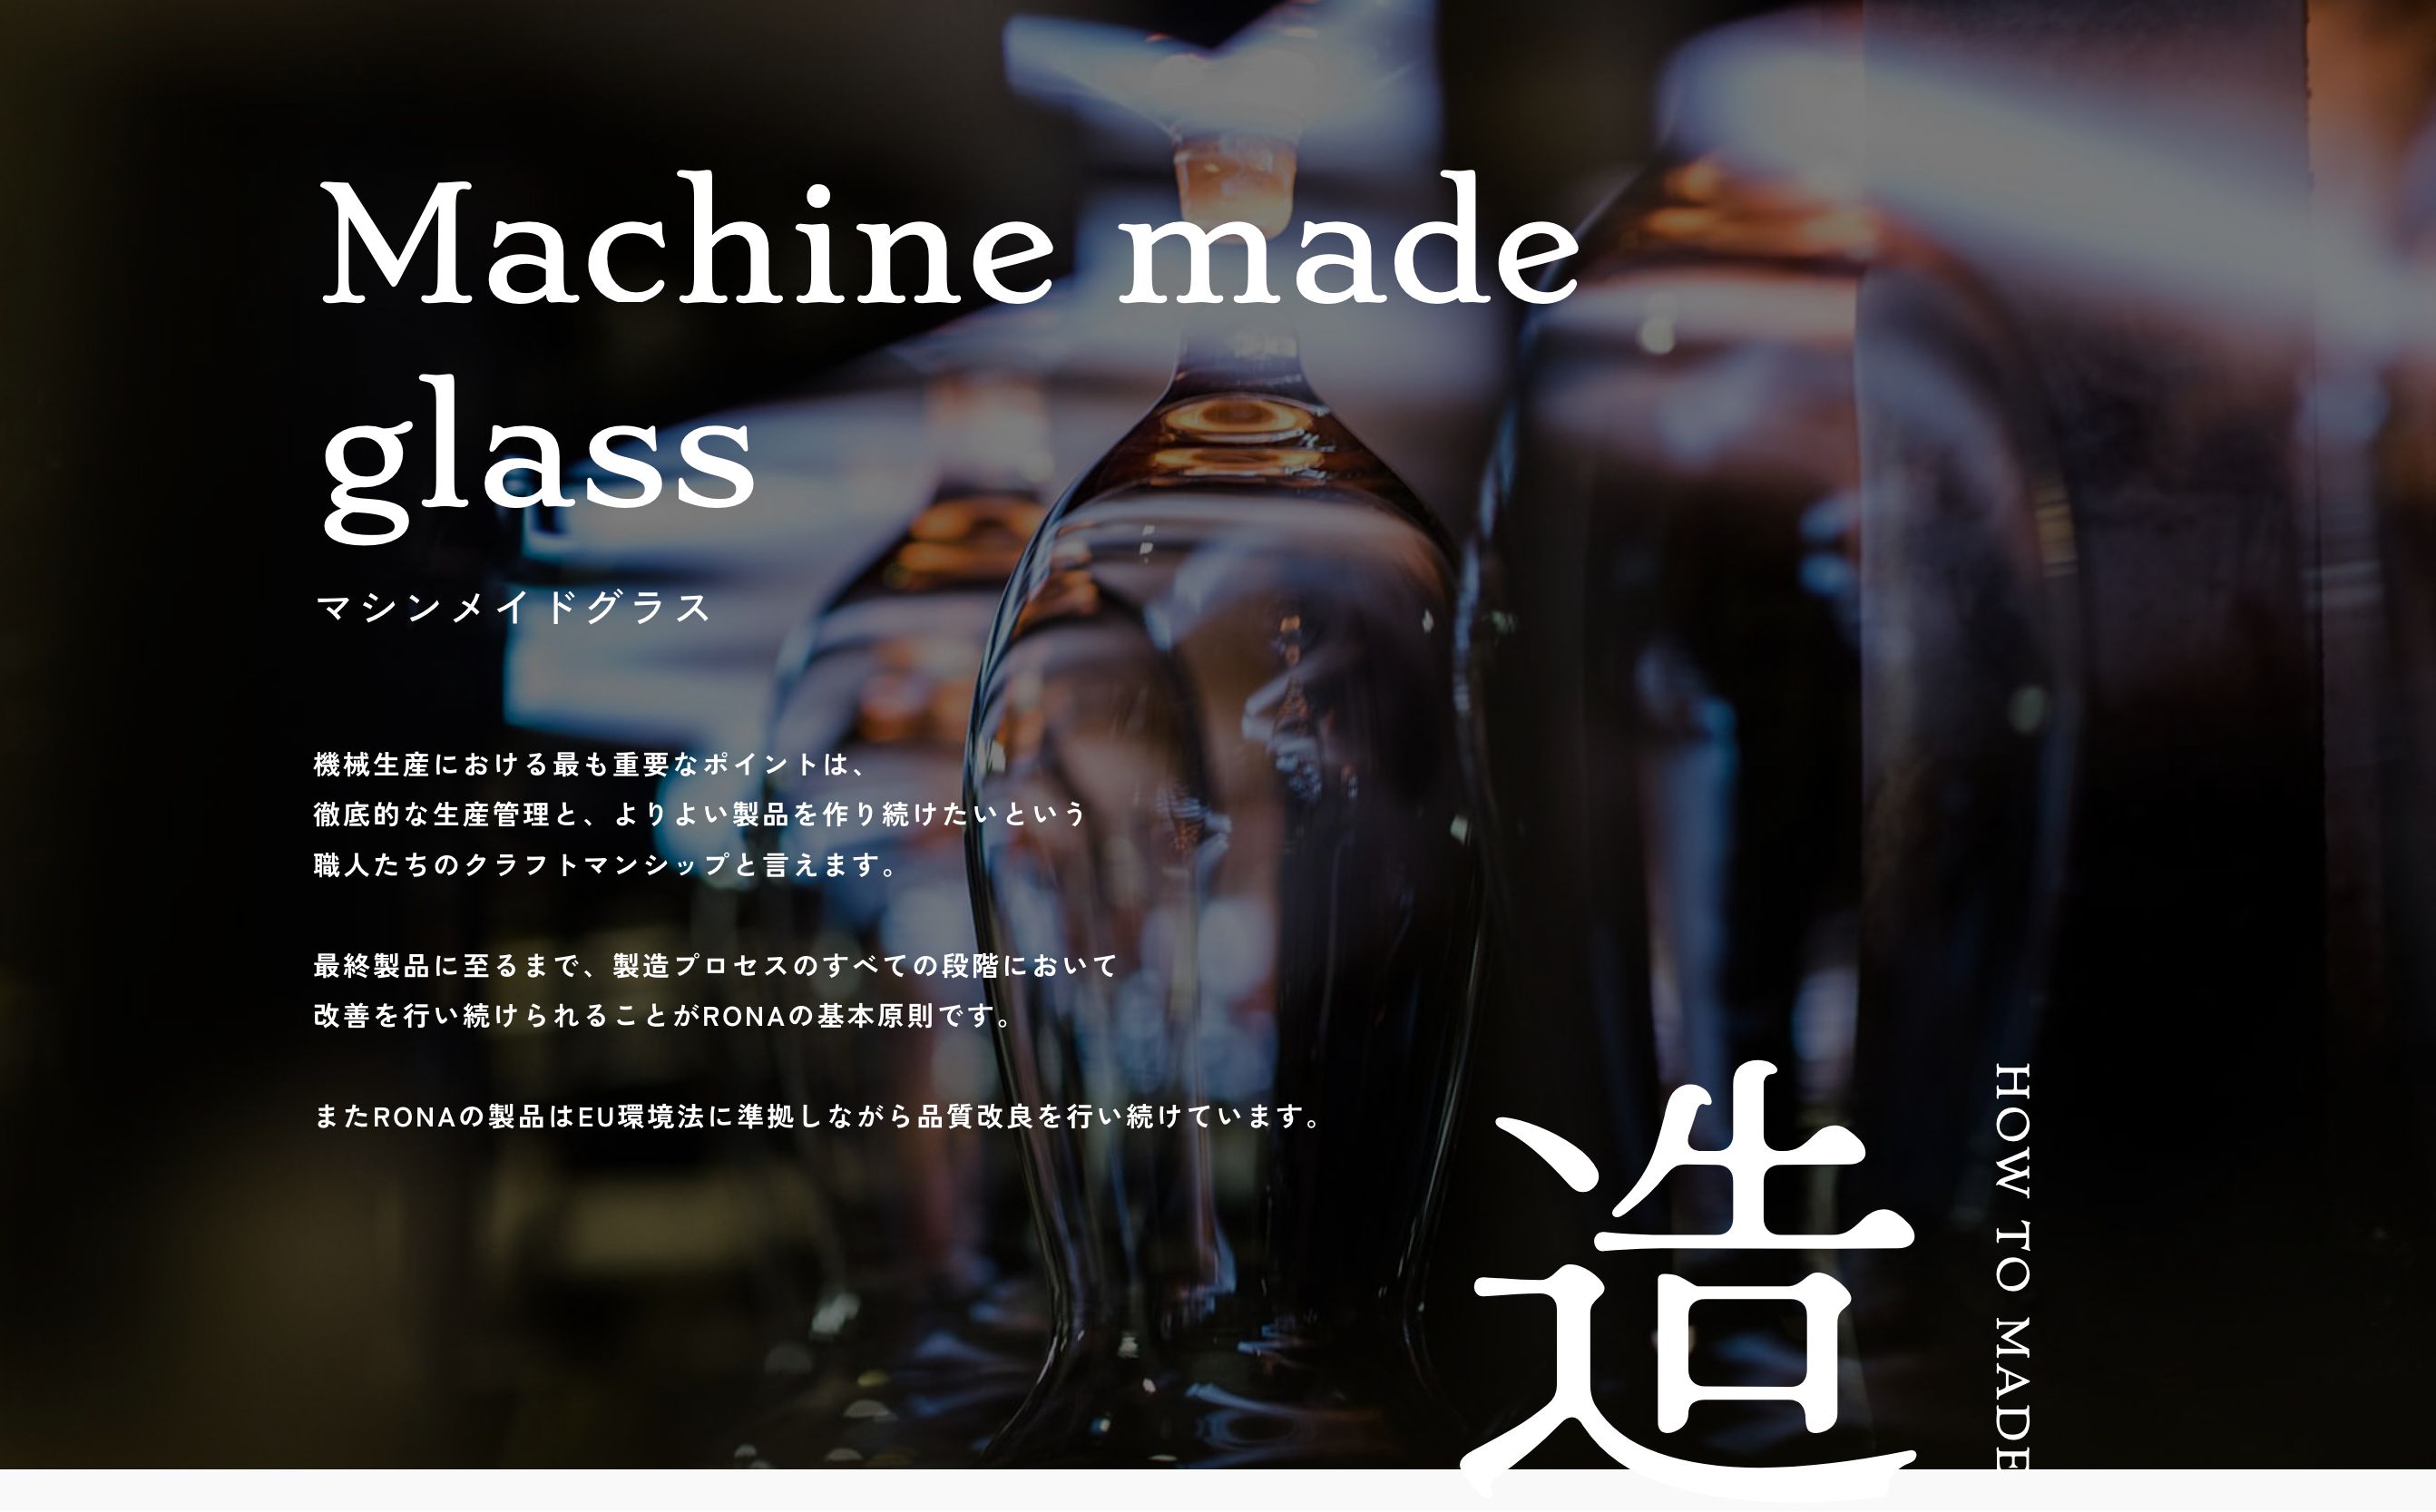 Machinemade glass